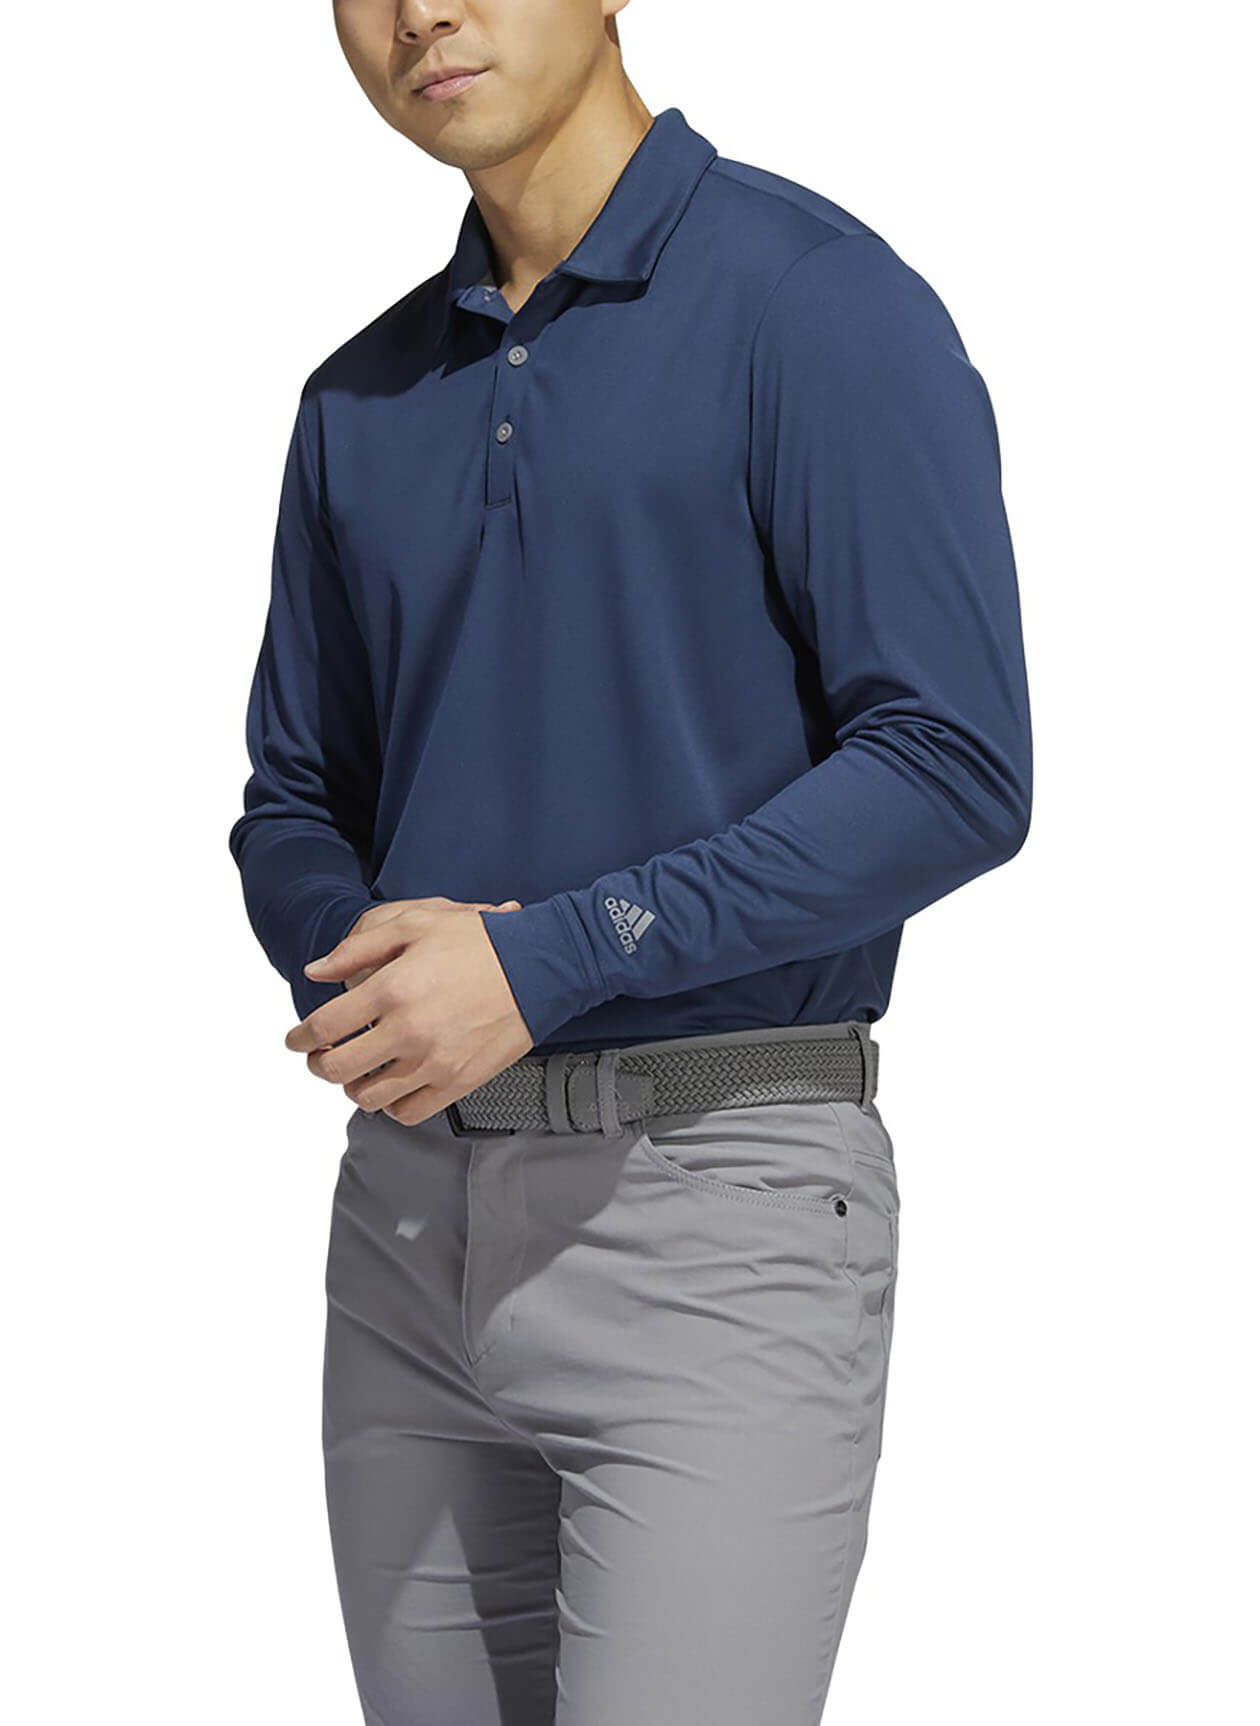 Adidas AD106 - Men's Primegreen Long-Sleeve Polo